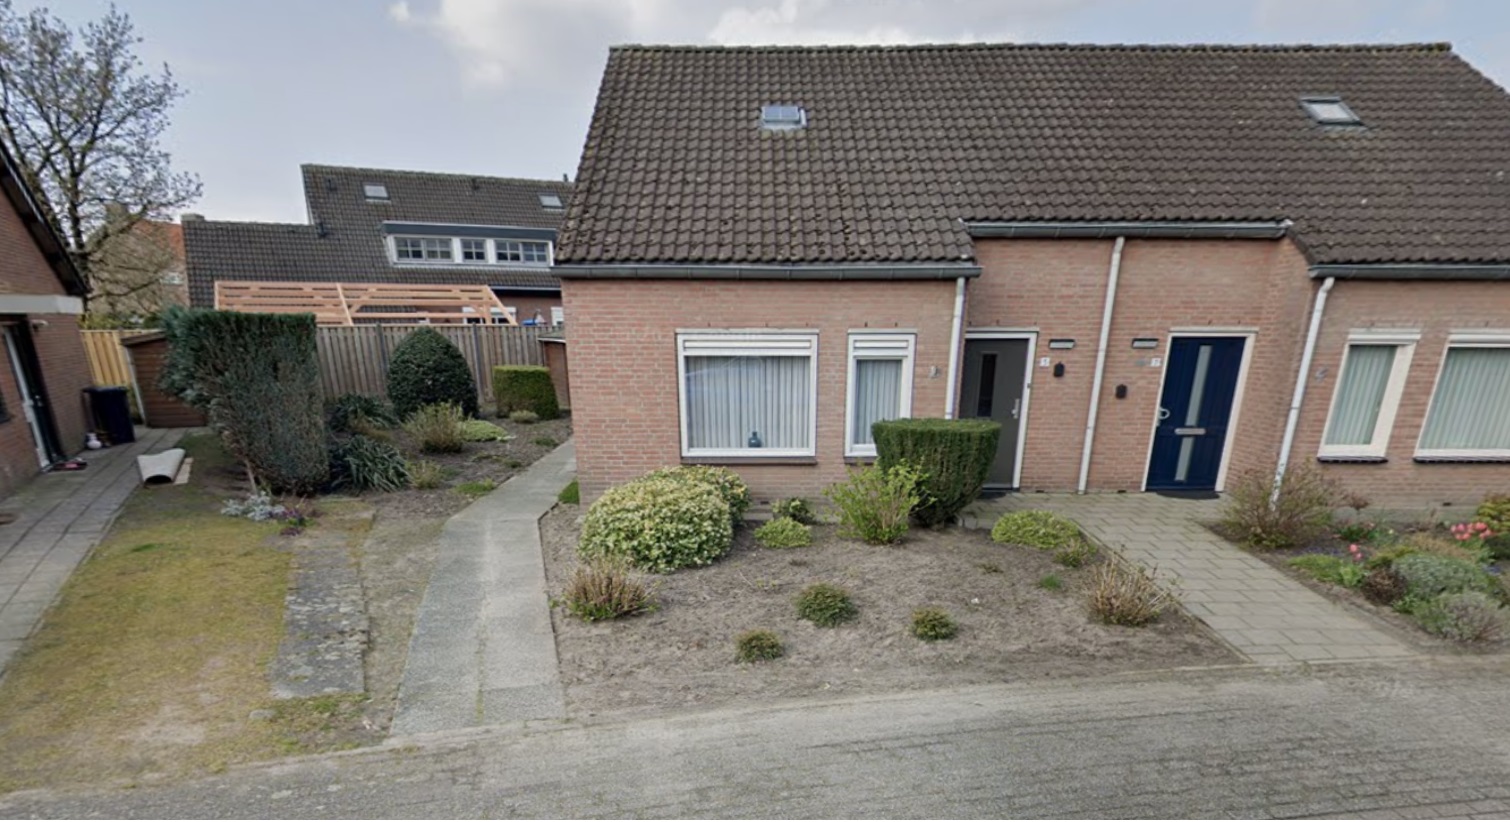 Dorperveld 5, 5815 AH Merselo, Nederland